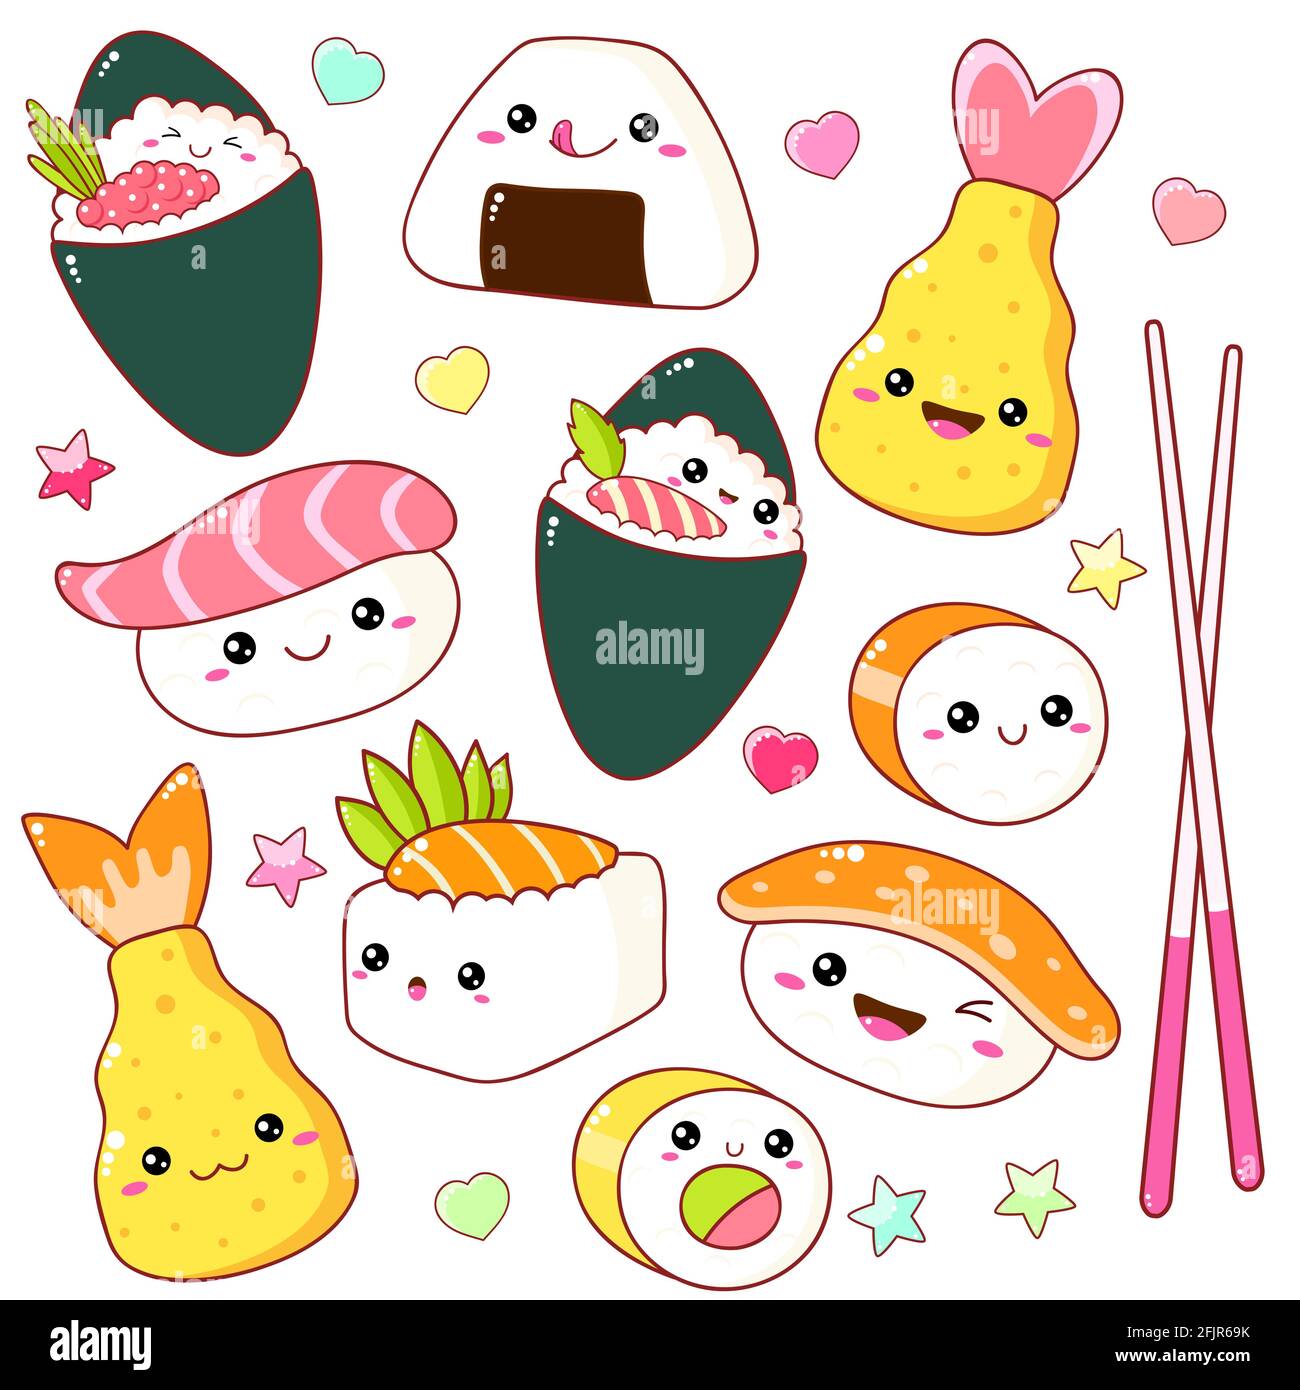 Ensemble de jolis sushis et des petits pains emblématiques dans le style kawaii avec visage souriant et joues roses. Plats de cuisine traditionnelle japonaise. Temaki, tempura, nigiri, tam Illustration de Vecteur